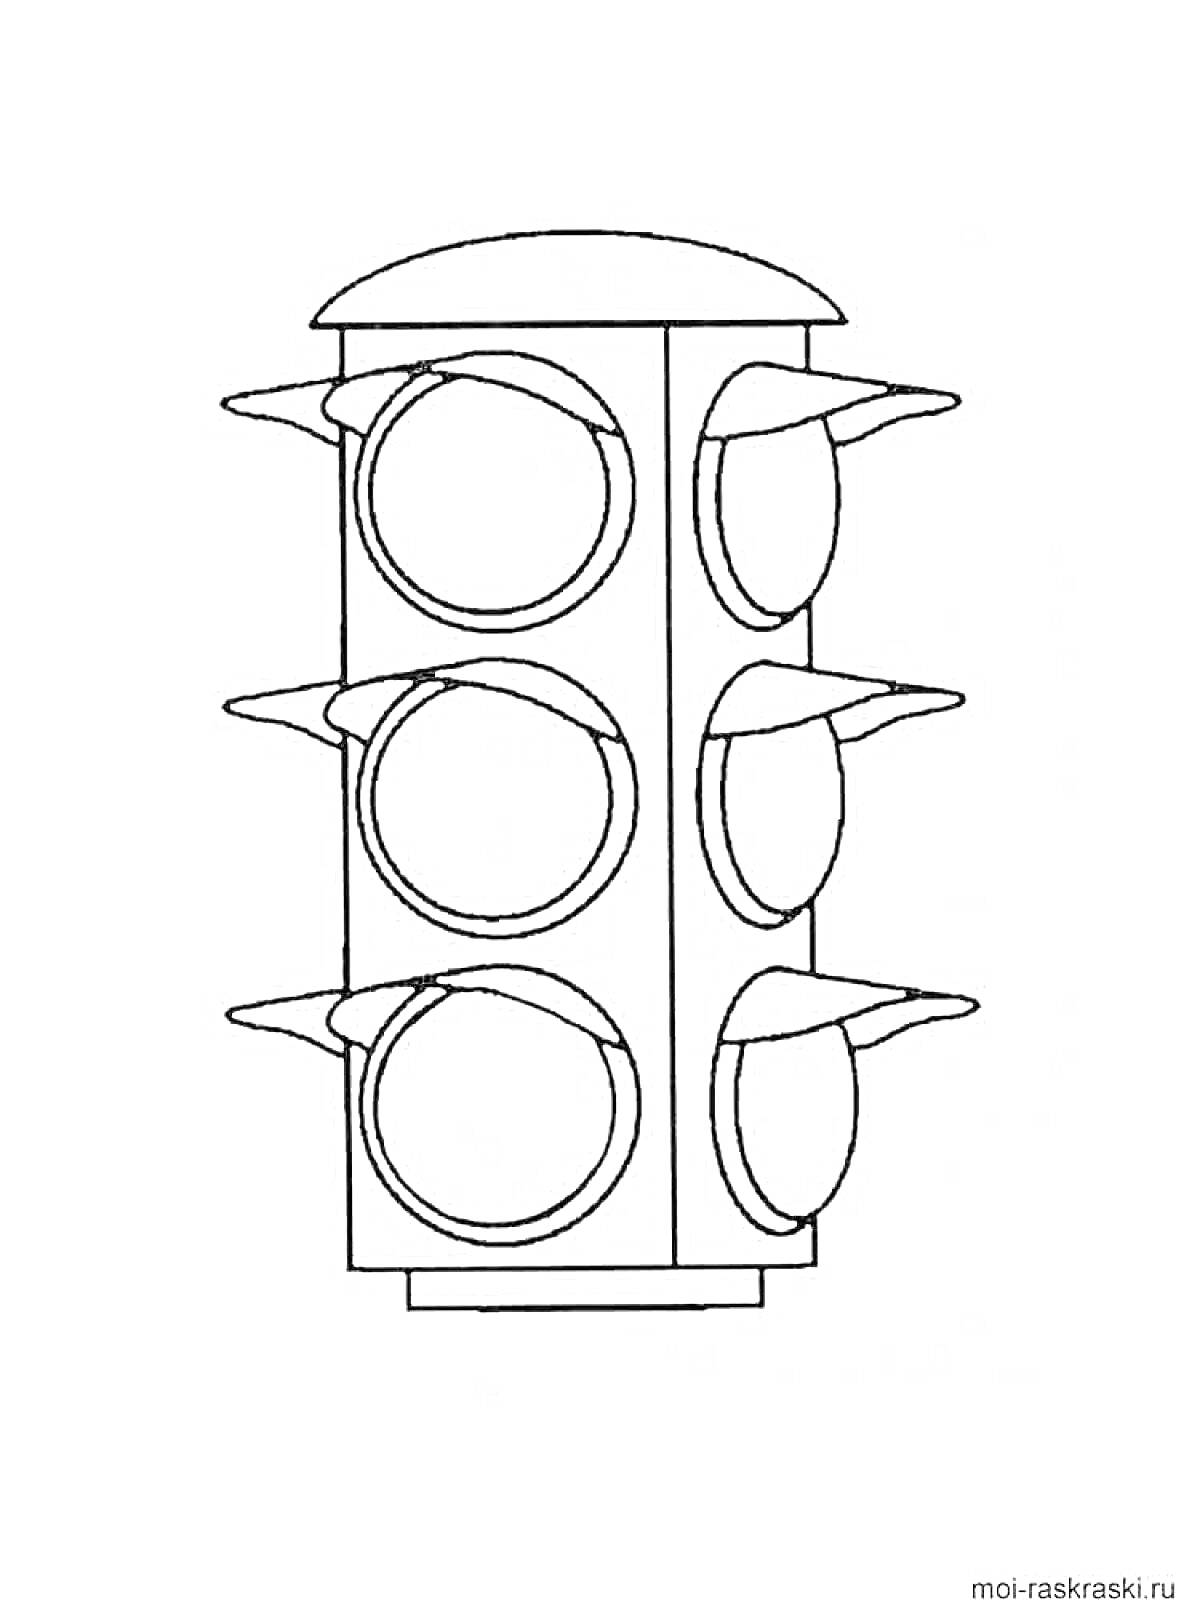 Светофор с тремя секциями на каждом из двух сторон